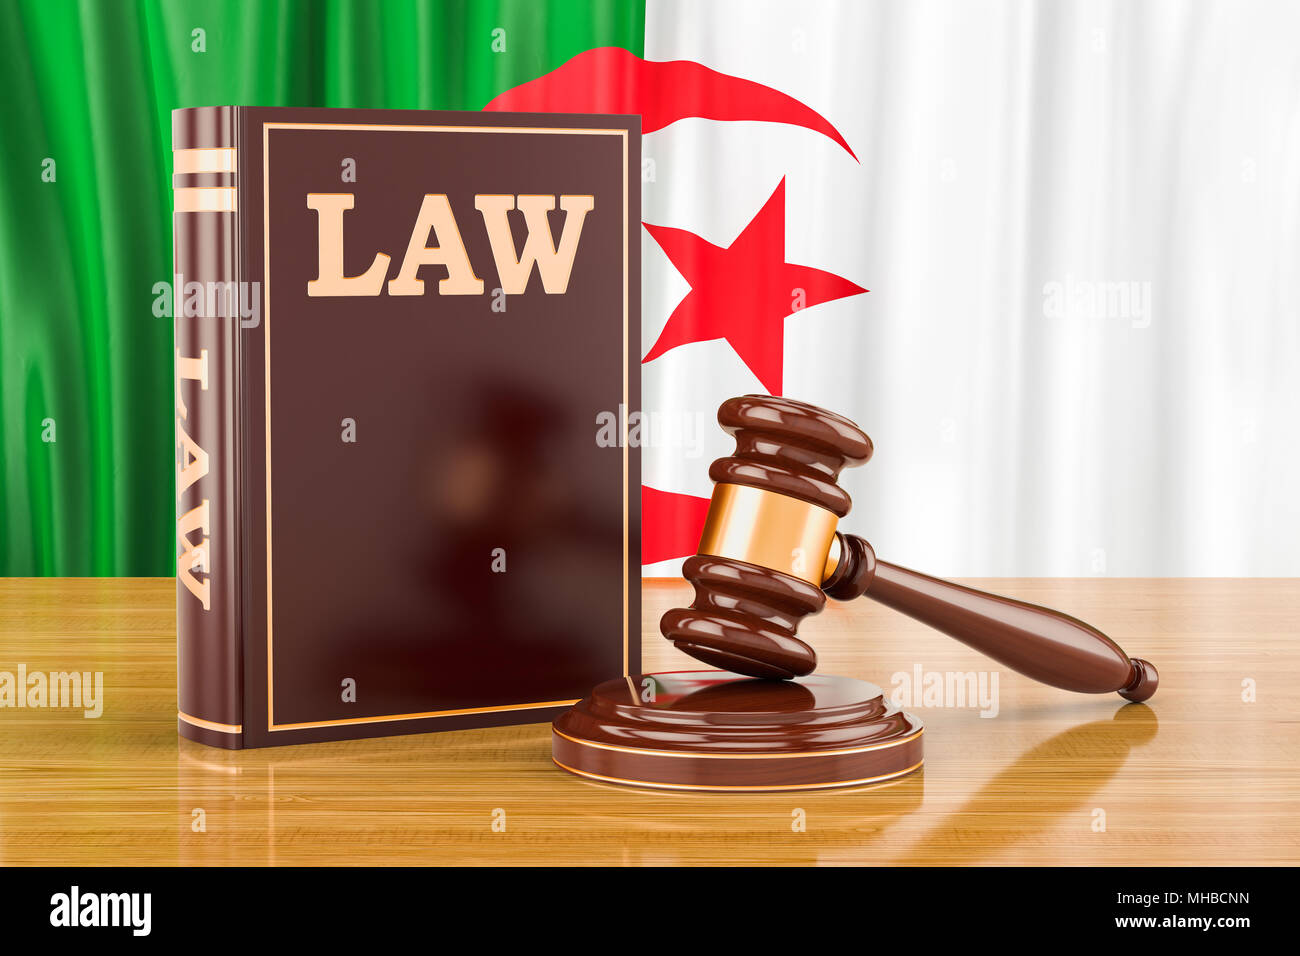 Algerischen Recht und Gerechtigkeit Konzept, 3D-Rendering Stockfoto